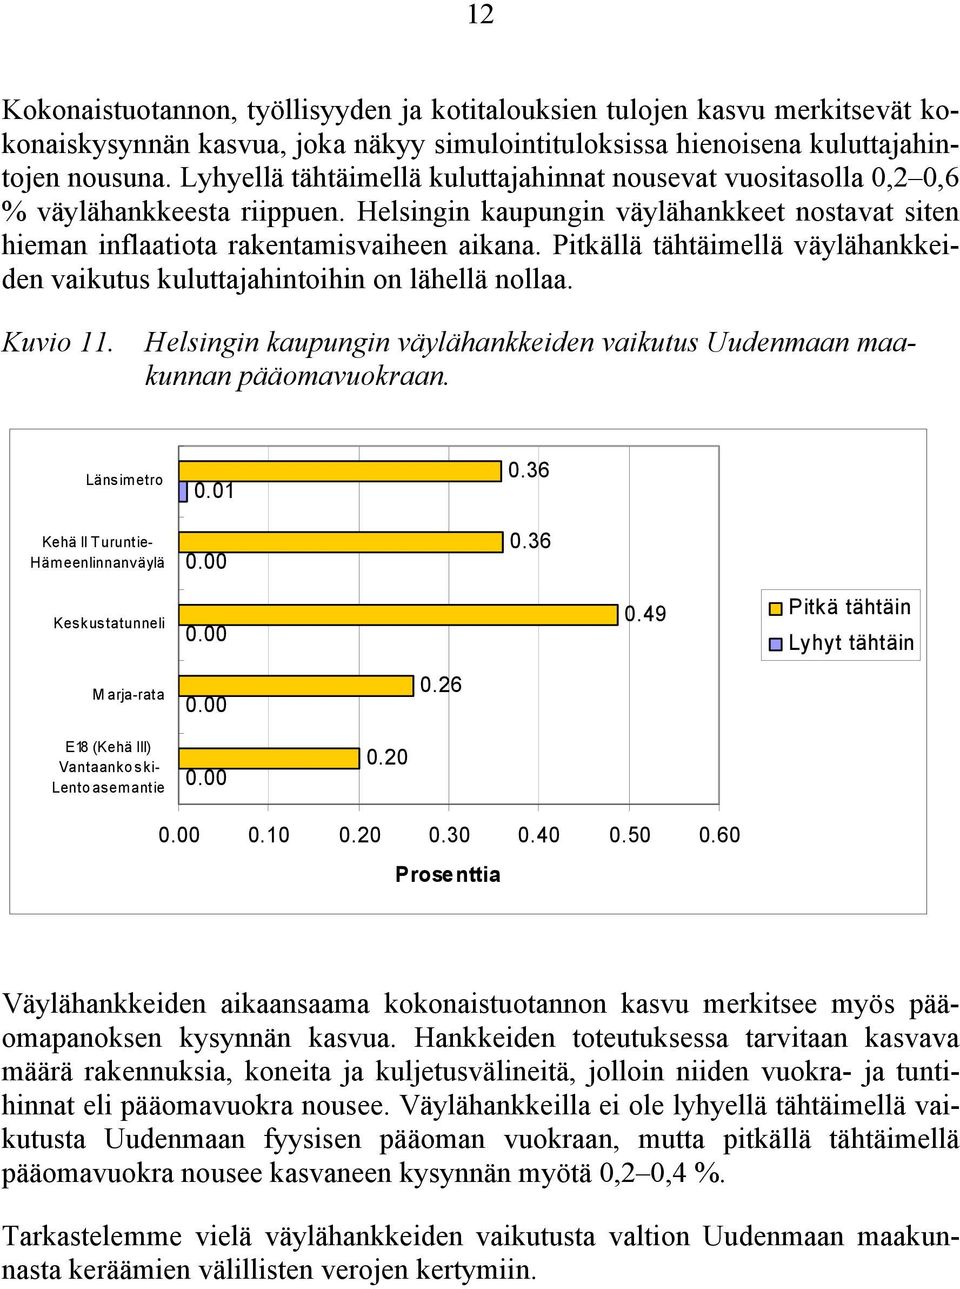 Pitkällä tähtäimellä väylähankkeiden vaikutus kuluttajahintoihin on lähellä nollaa. Kuvio 11. Helsingin kaupungin väylähankkeiden vaikutus Uudenmaan maakunnan pääomavuokraan.